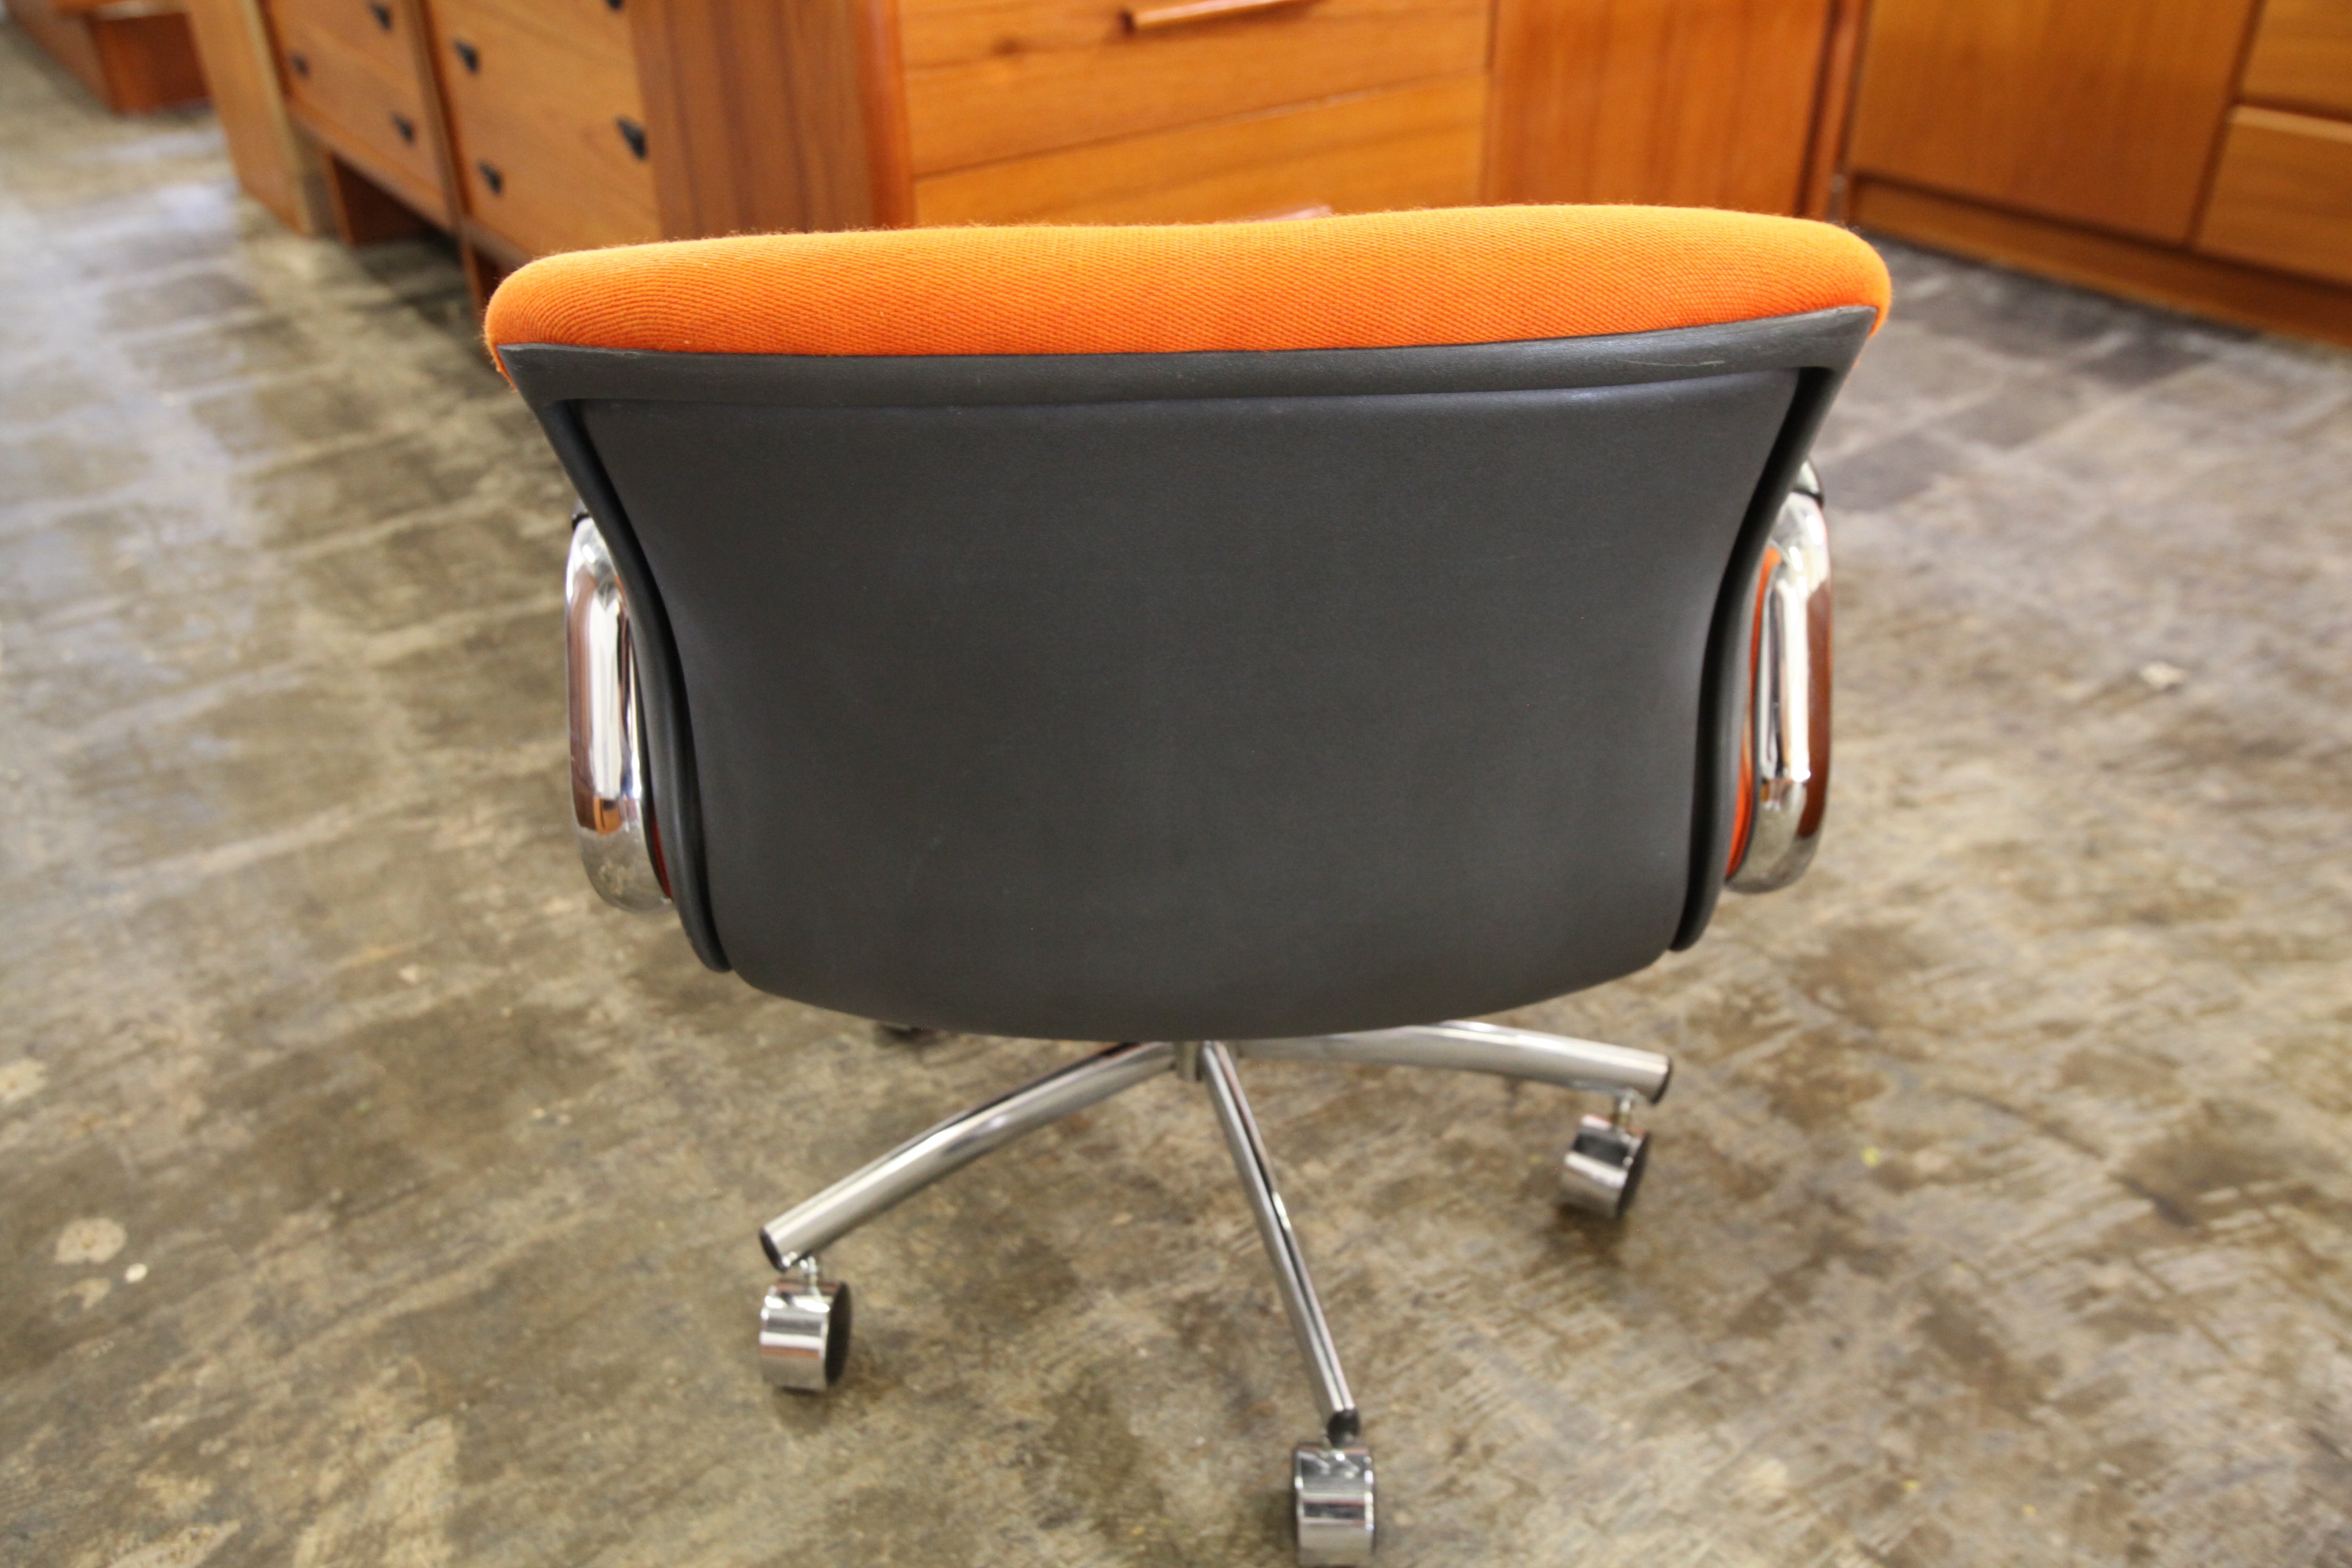 Vintage Orange Steelcase Chair (24.5"W x 30.5"H x 26"D)